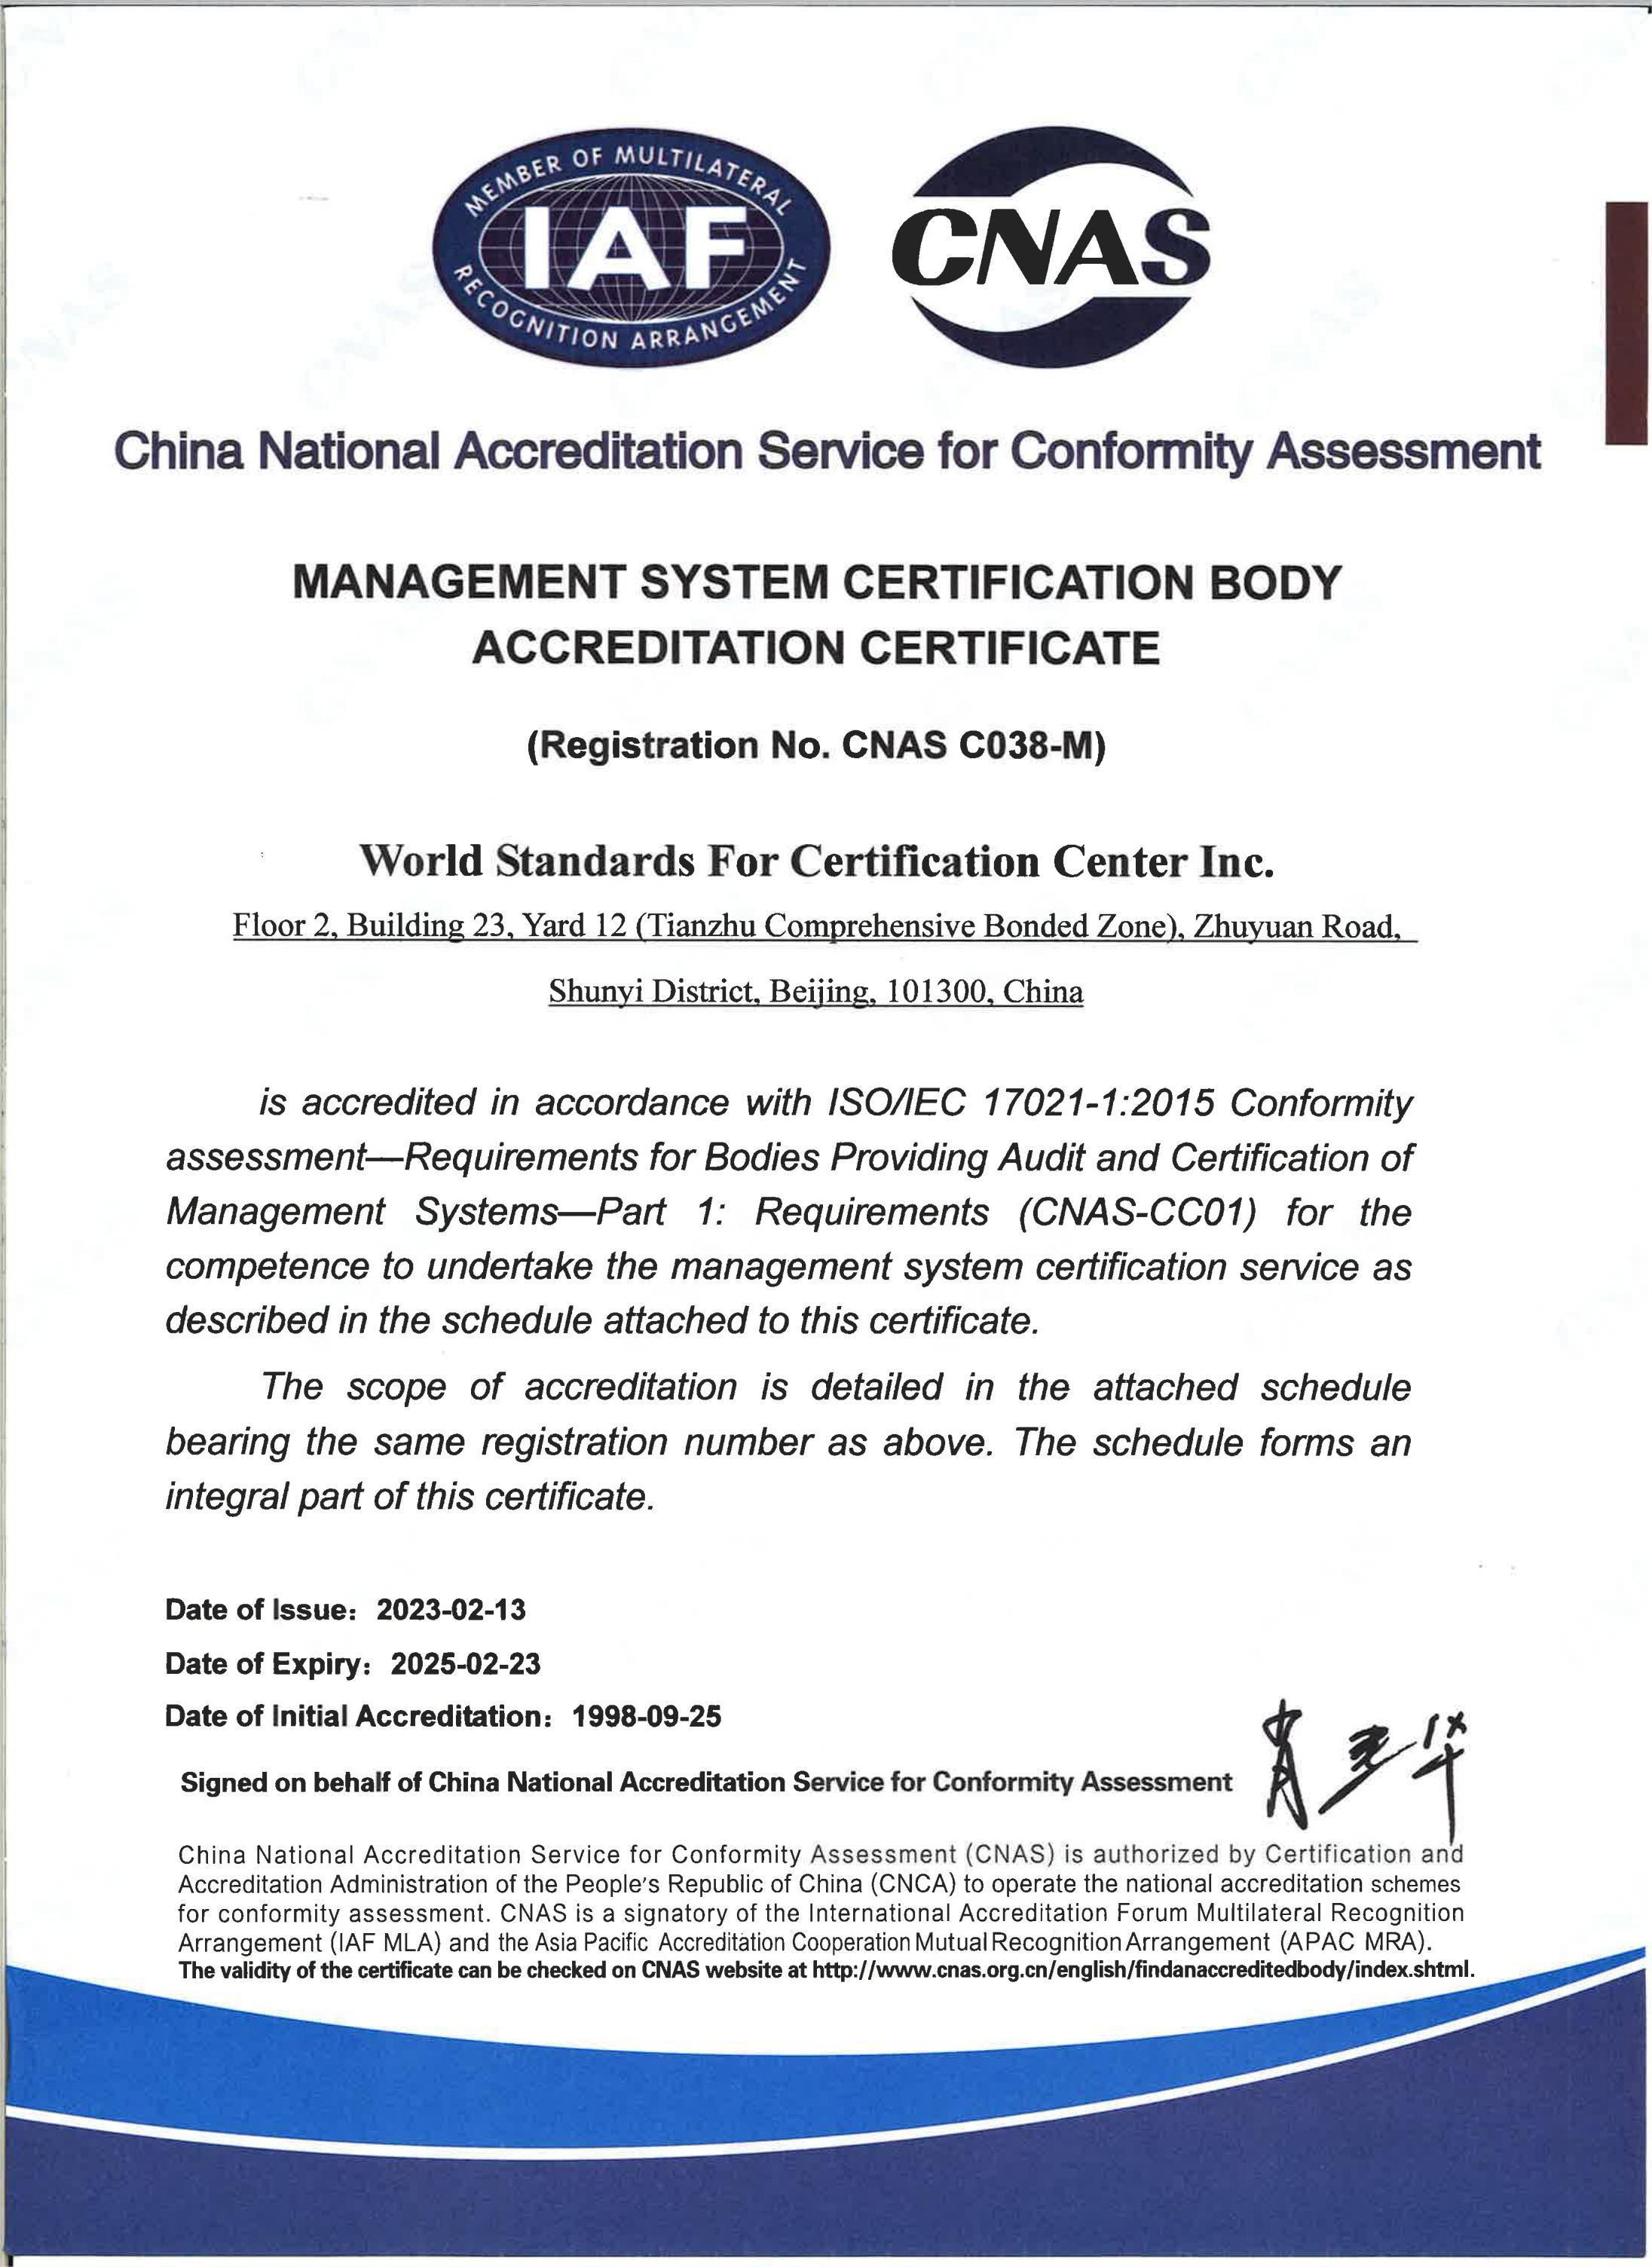 管理体系认证机构认可证书-英文版_00.jpg